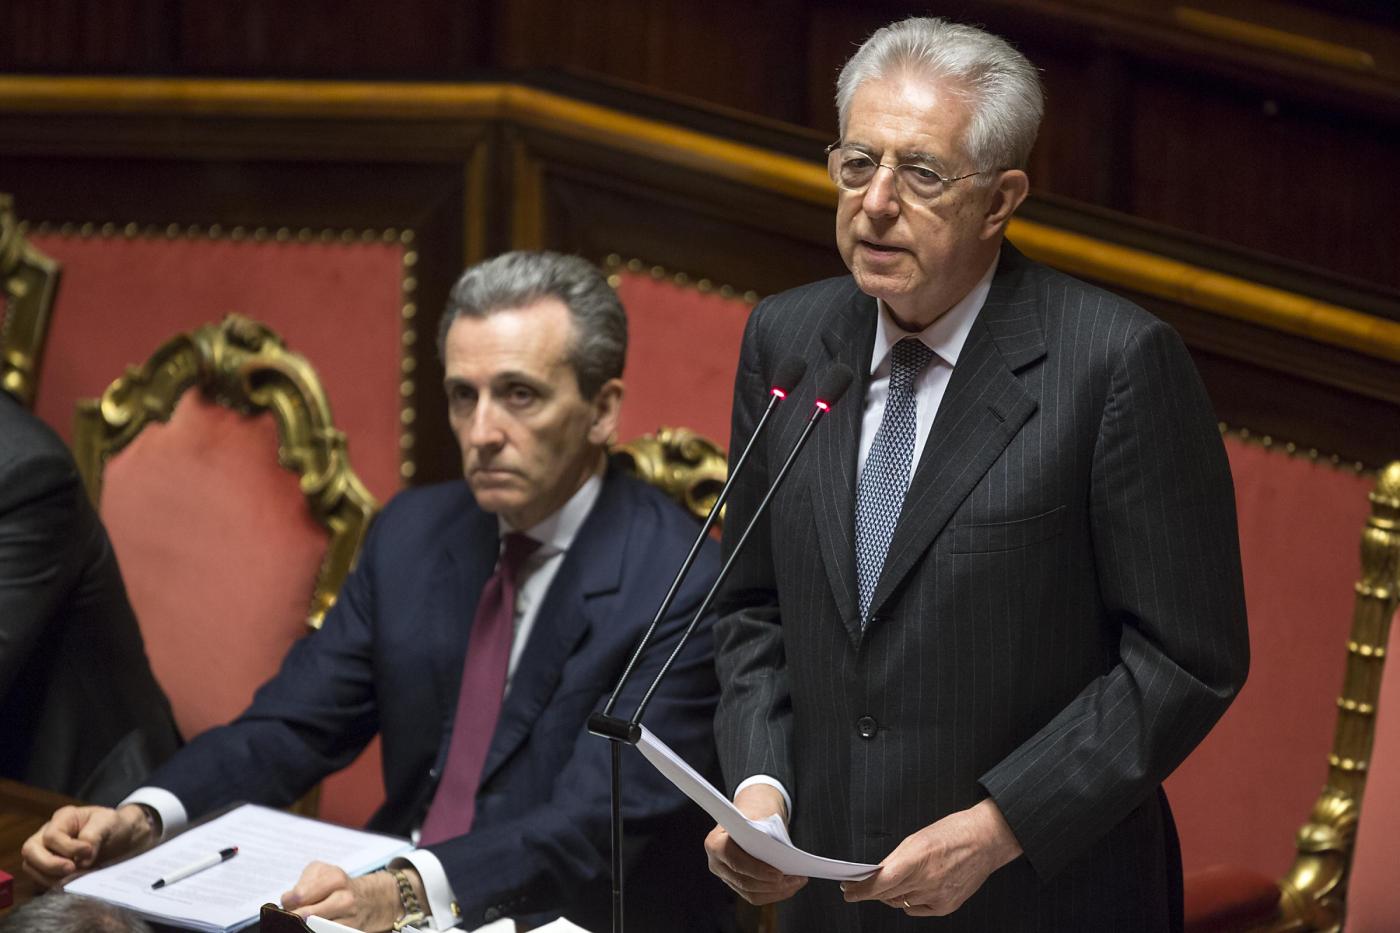 Senato - Informativa di Mario Monti su Consiglio Europeo